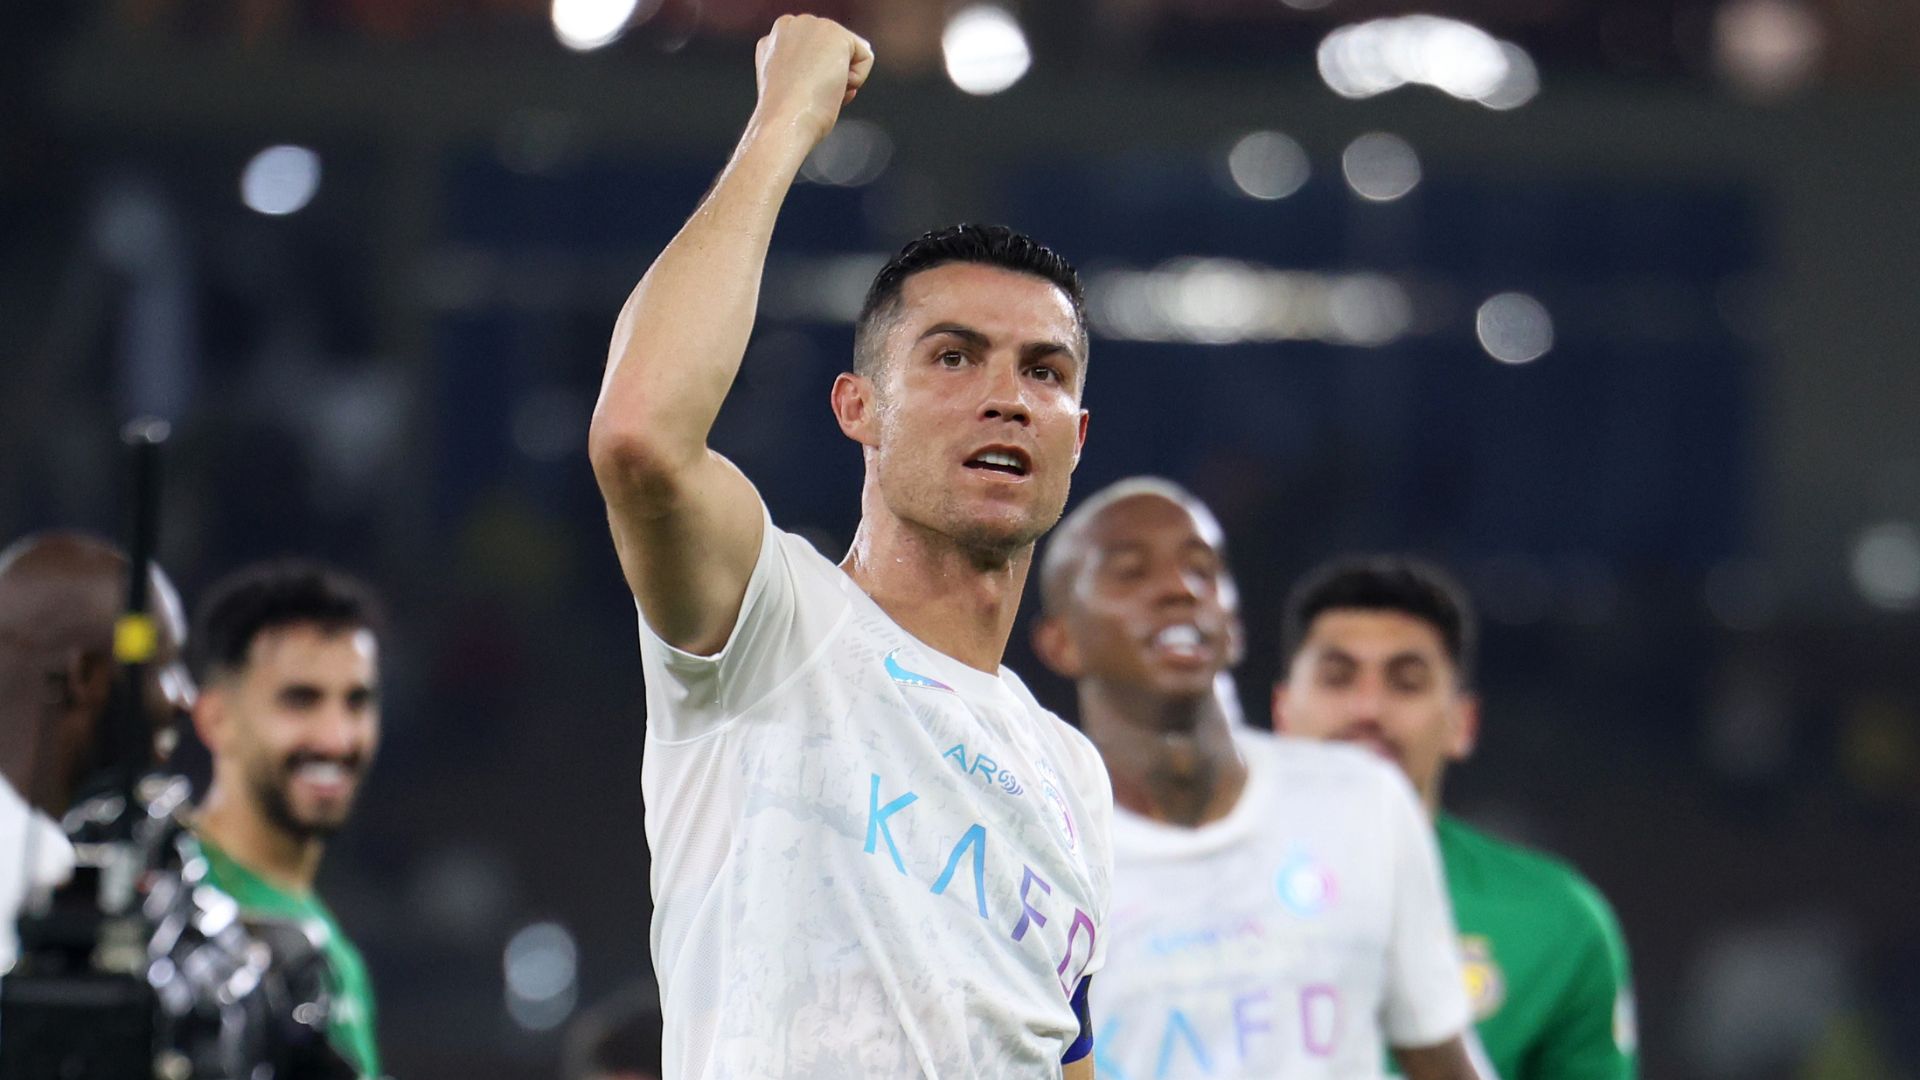 Cristiano Ronaldo comemorando vitória pelo Al Nassr (Crédito: Getty Images)